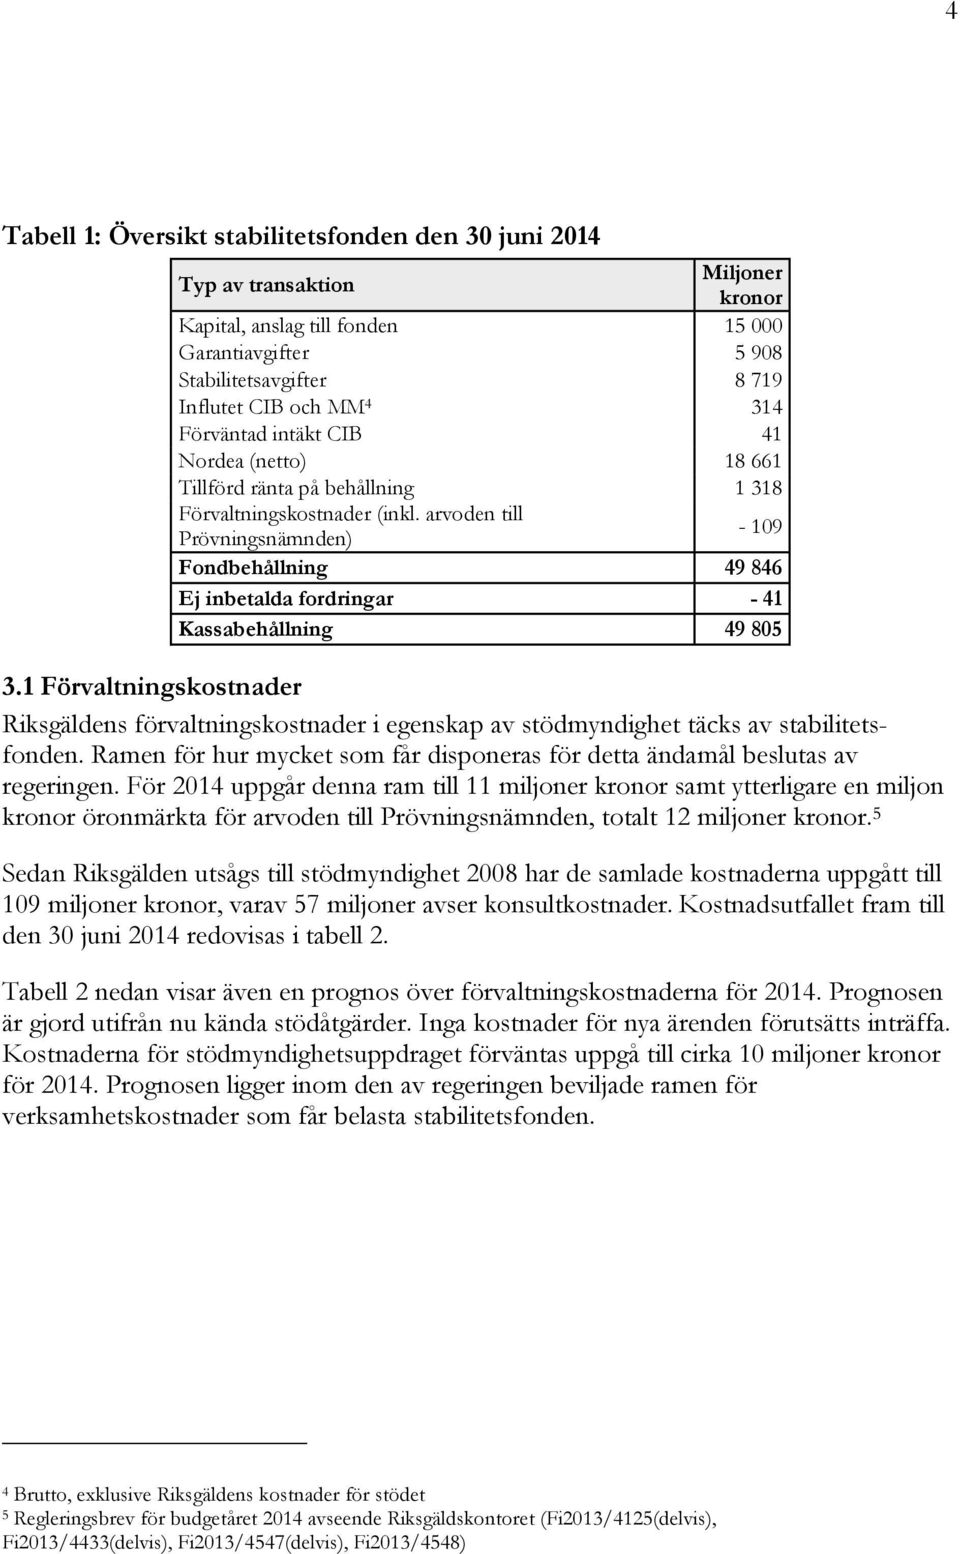 arvoden till Prövningsnämnden) - 109 Fondbehållning 49 846 Ej inbetalda fordringar - 41 Kassabehållning 49 805 3.